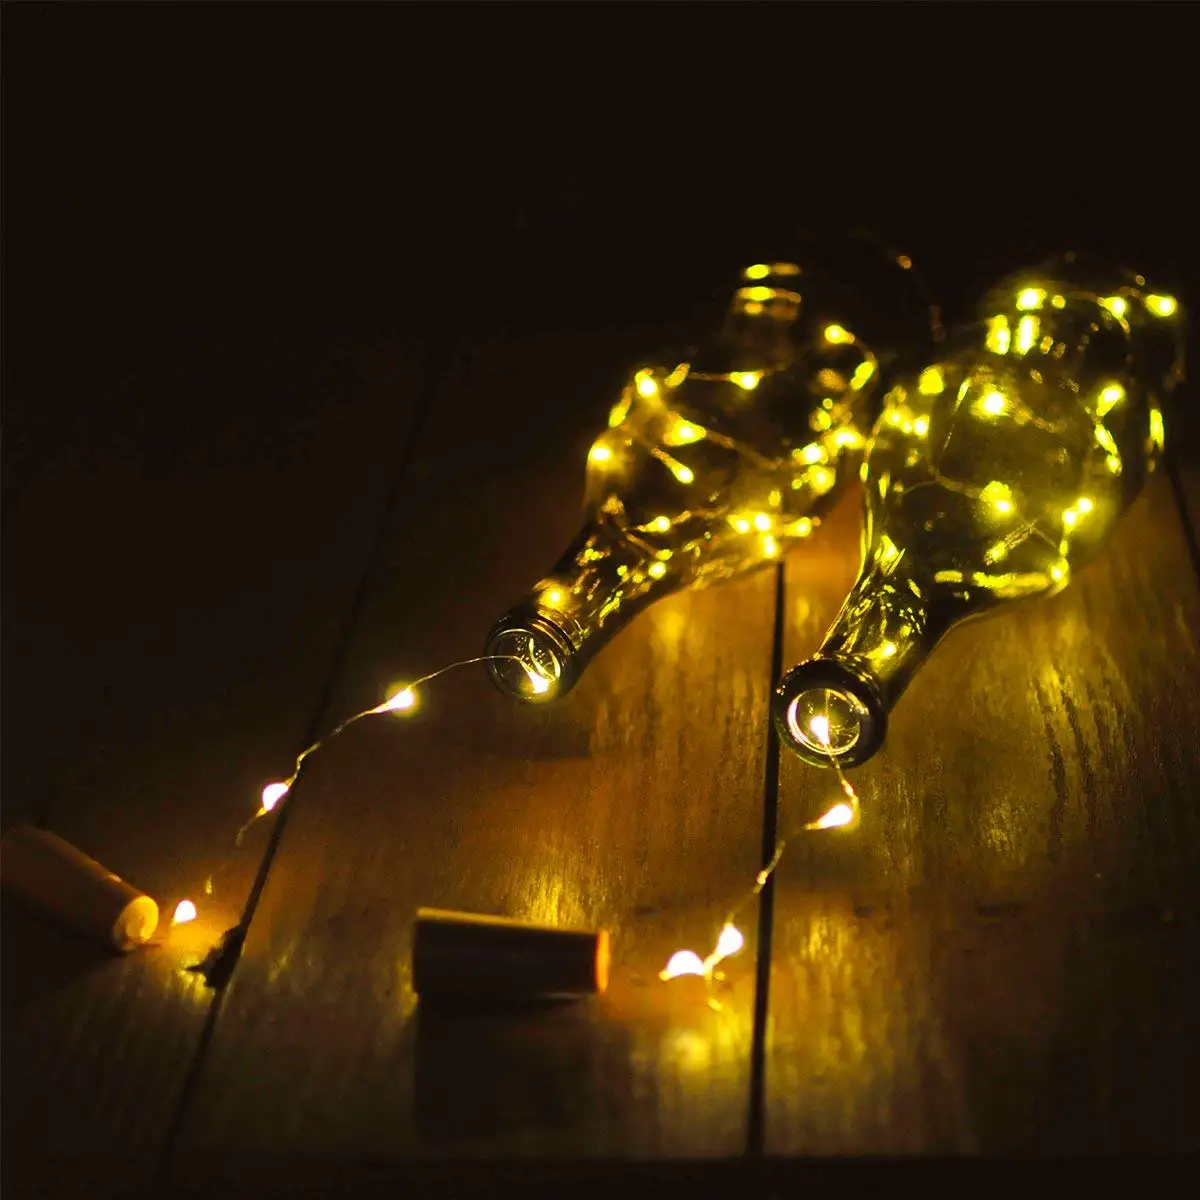 10 шт./лот светильники в форме винных бутылок пробковые сказочные гирлянды 2 м 20 светодиодов на батарейках огни для рождественских вечеринок Свадебные украшения